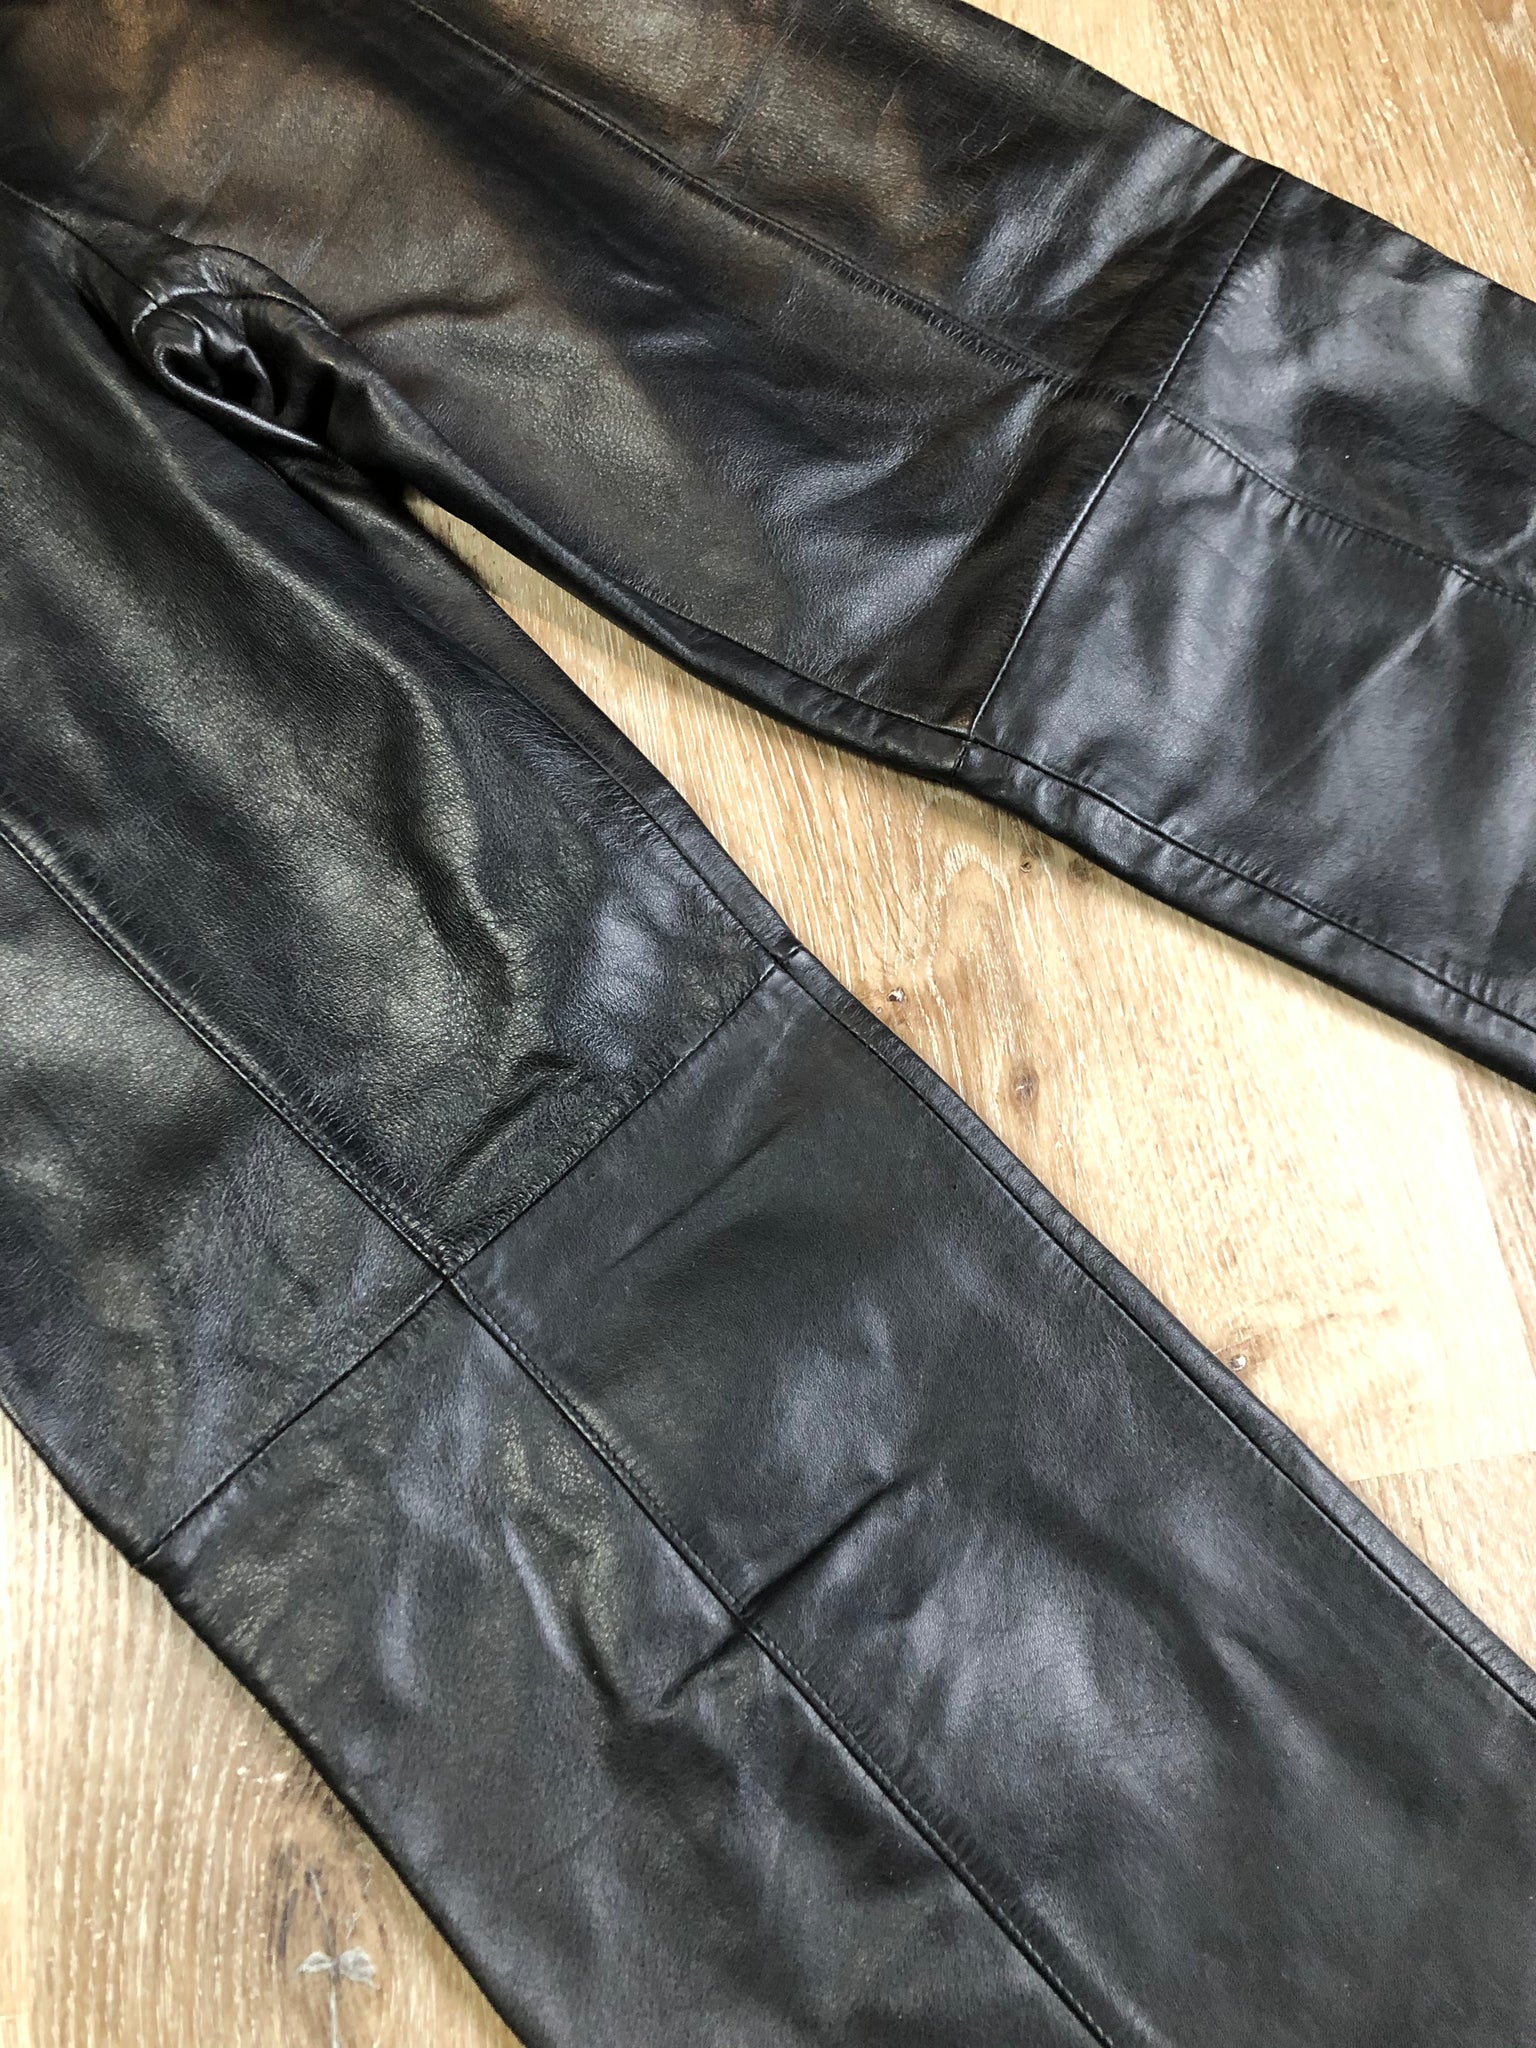 Danier Black Leather Pants, 28x31 – KingsPIER vintage